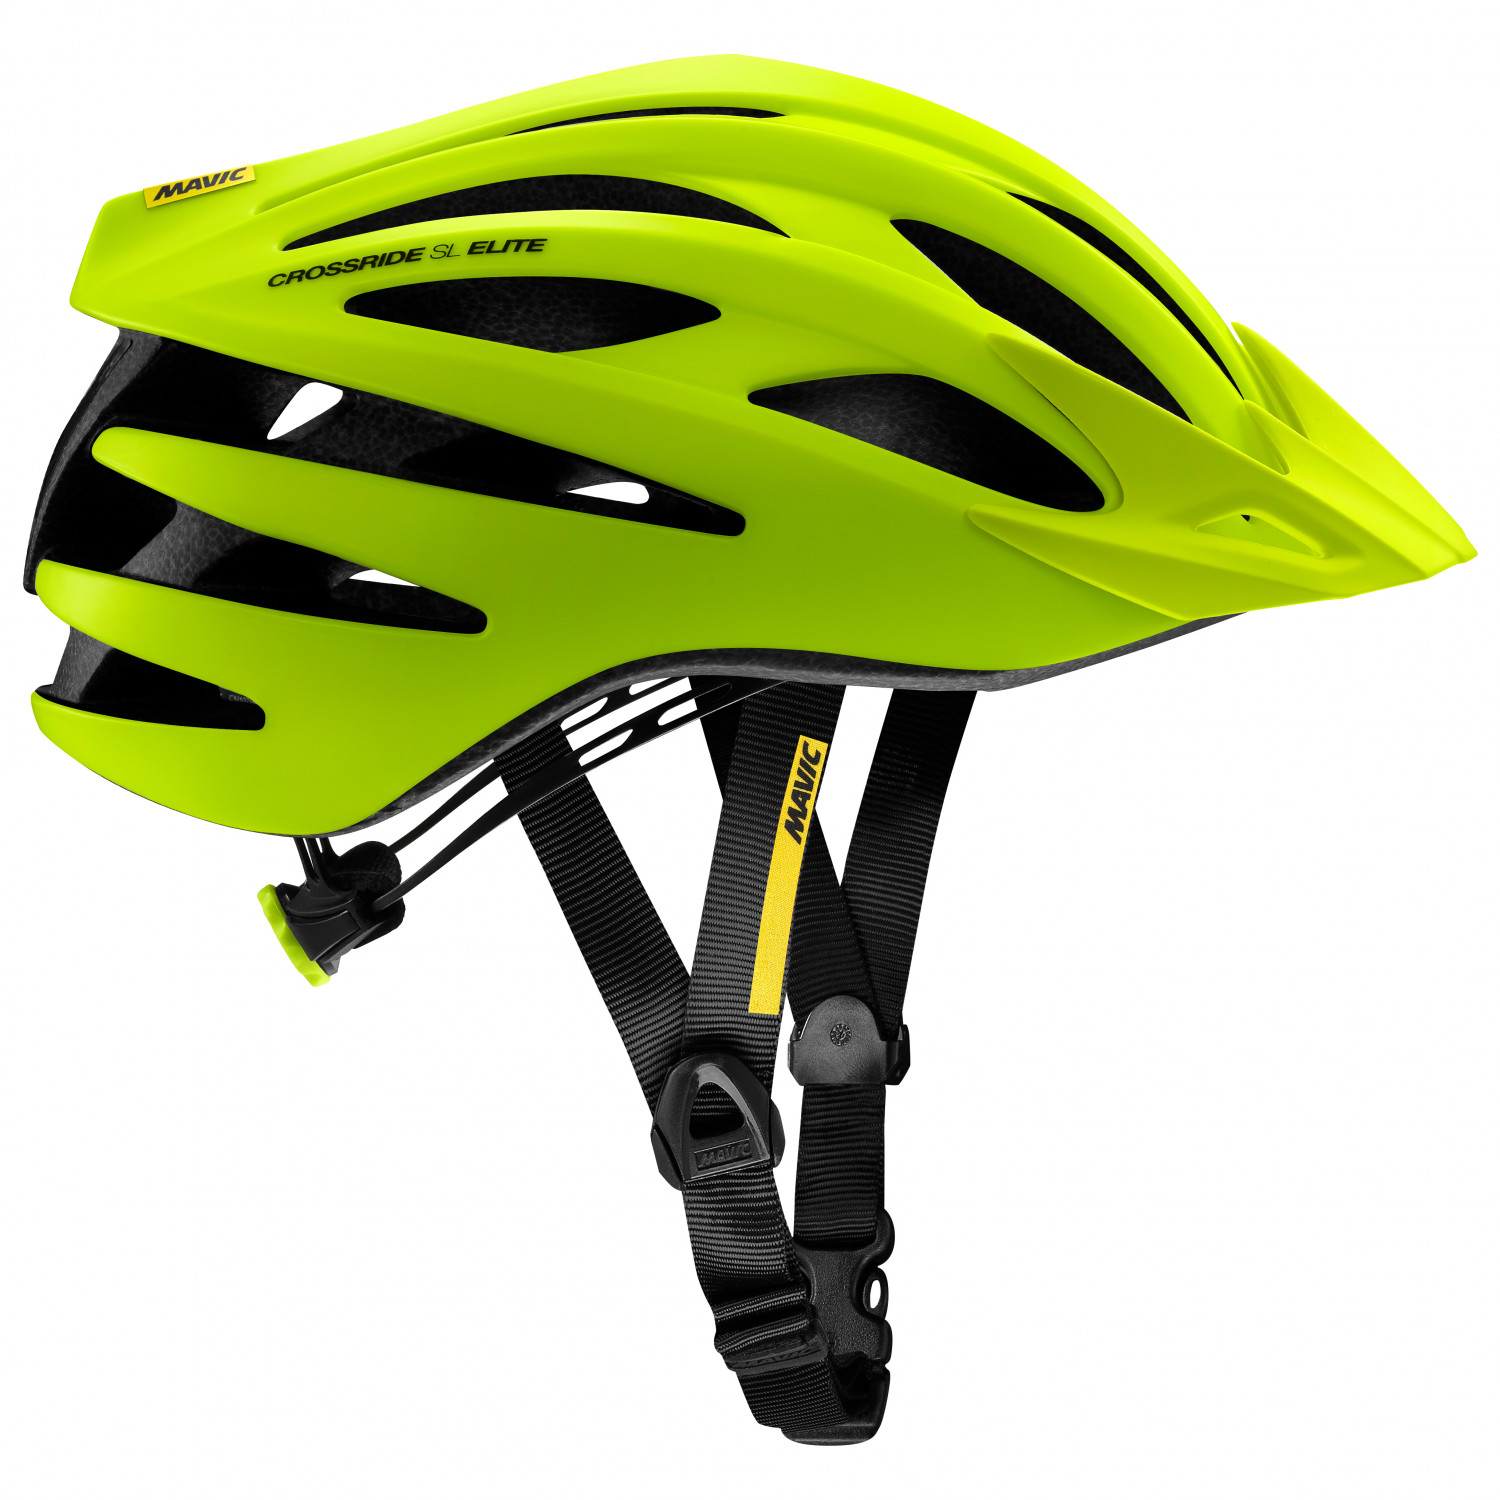 Велосипедный шлем Mavic Crossride SL Elite, цвет Safety Yellow/Black шлем велосипедный sisak универсальный всесезонный детский спортивный шлем для горных велосипедов cobwebs